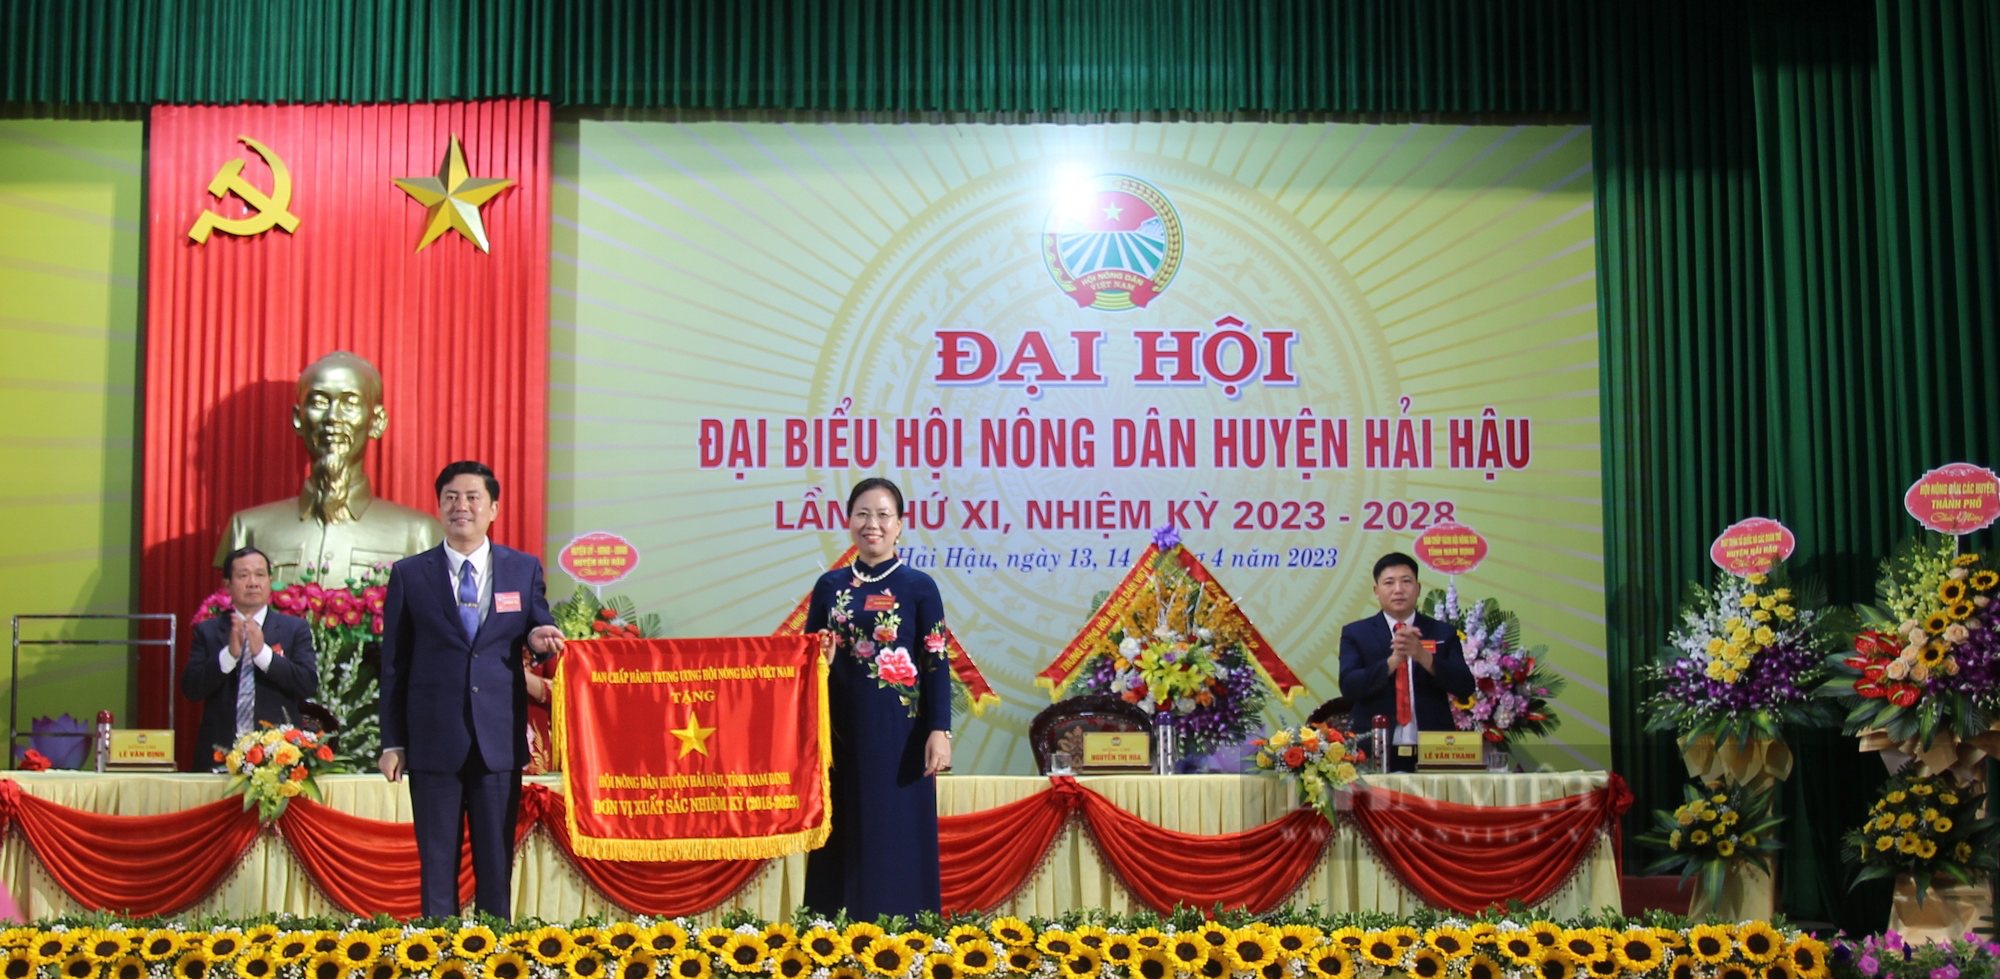 Lãnh đạo Trung ương Hội Nông dân Việt Nam dự Đại hội Hội Nông dân huyện Hải Hậu, Nam Định - Ảnh 5.